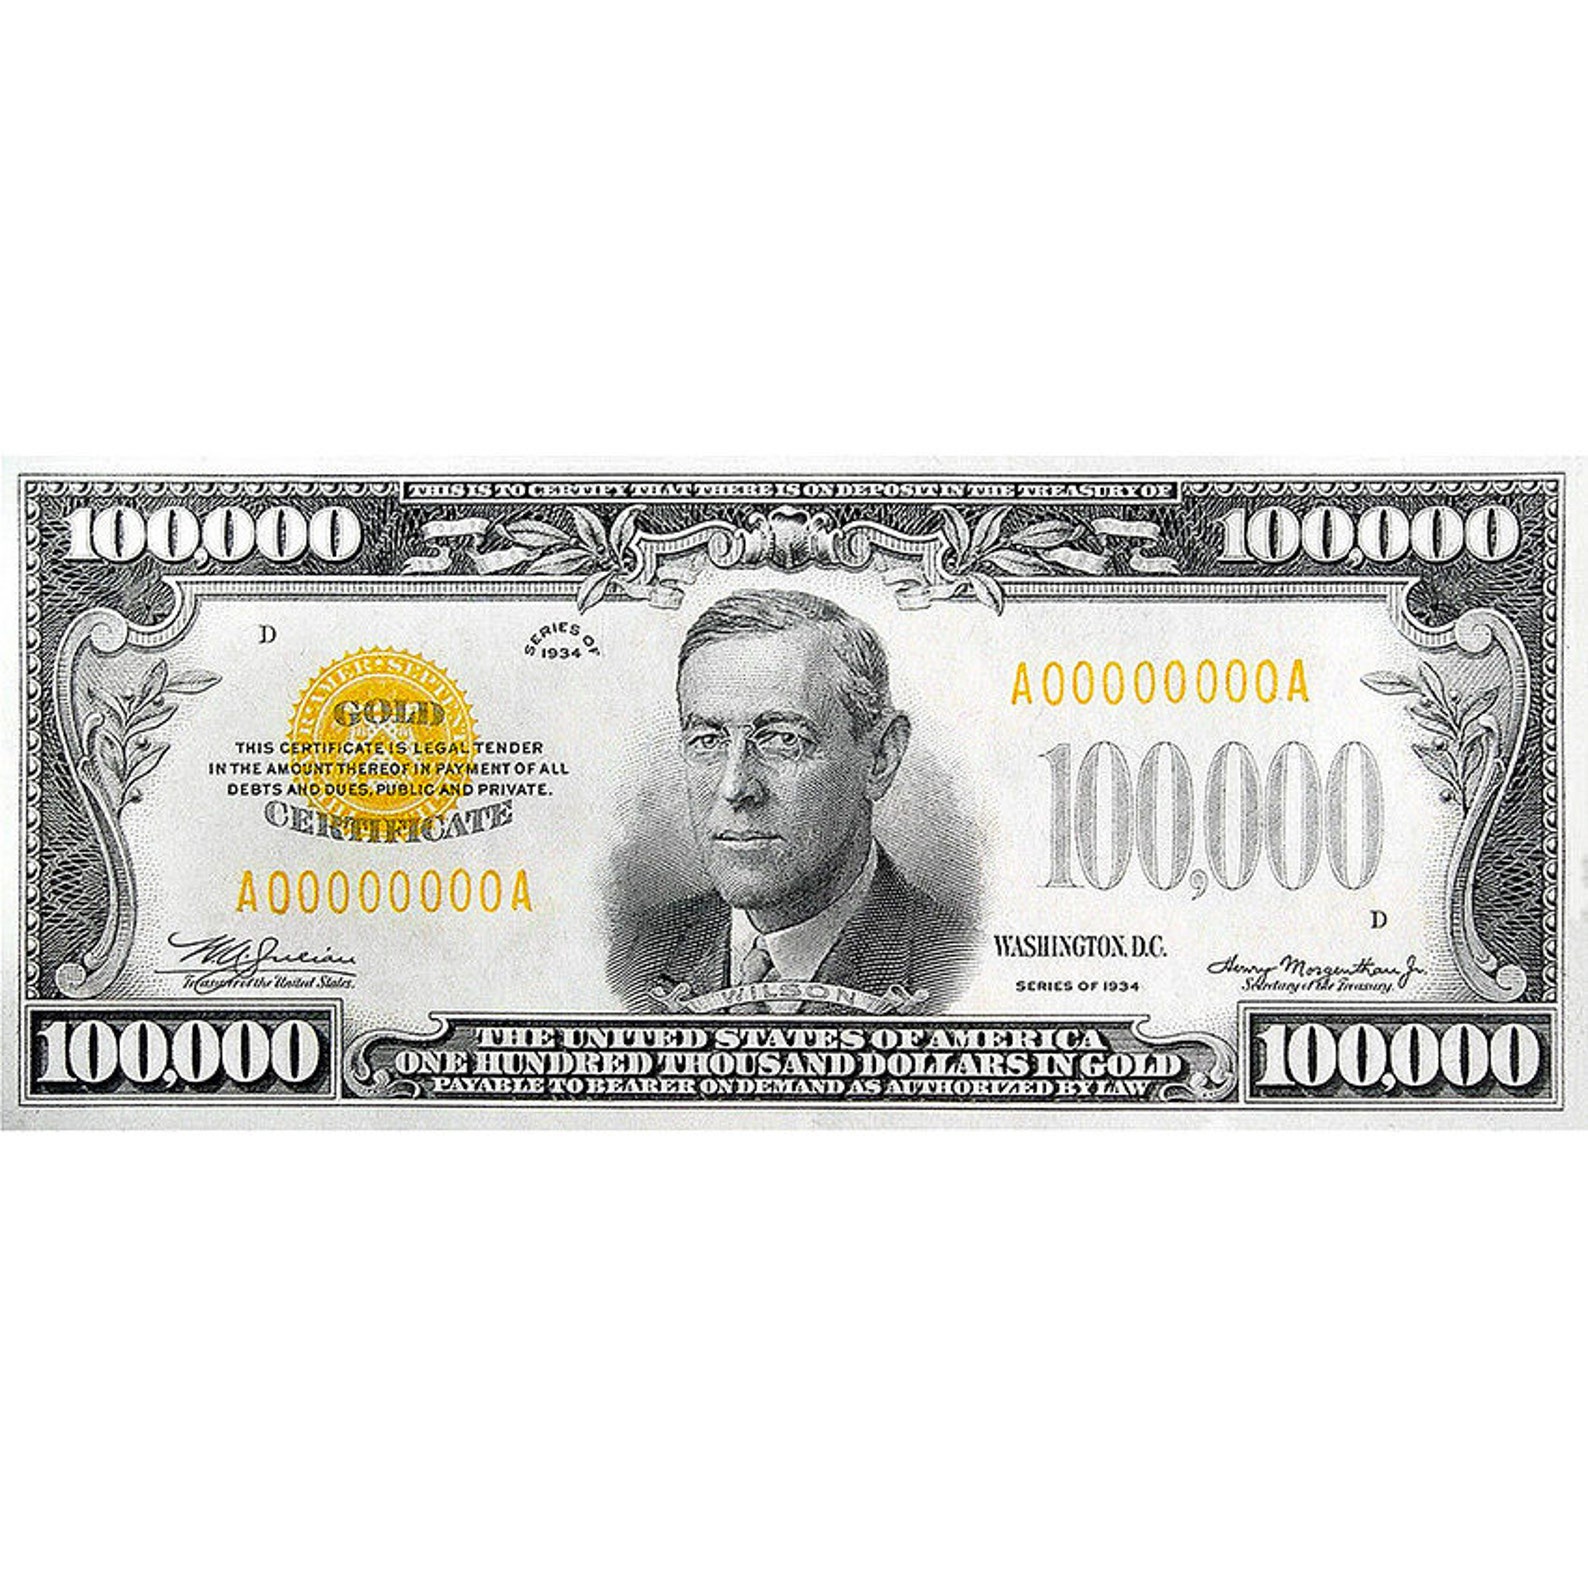 10 9 доллара. Купюра 100000 долларов. Купюра 100000 долларов США. Самая большая купюра доллара. Банкнота 100000 долларов 1934 года.